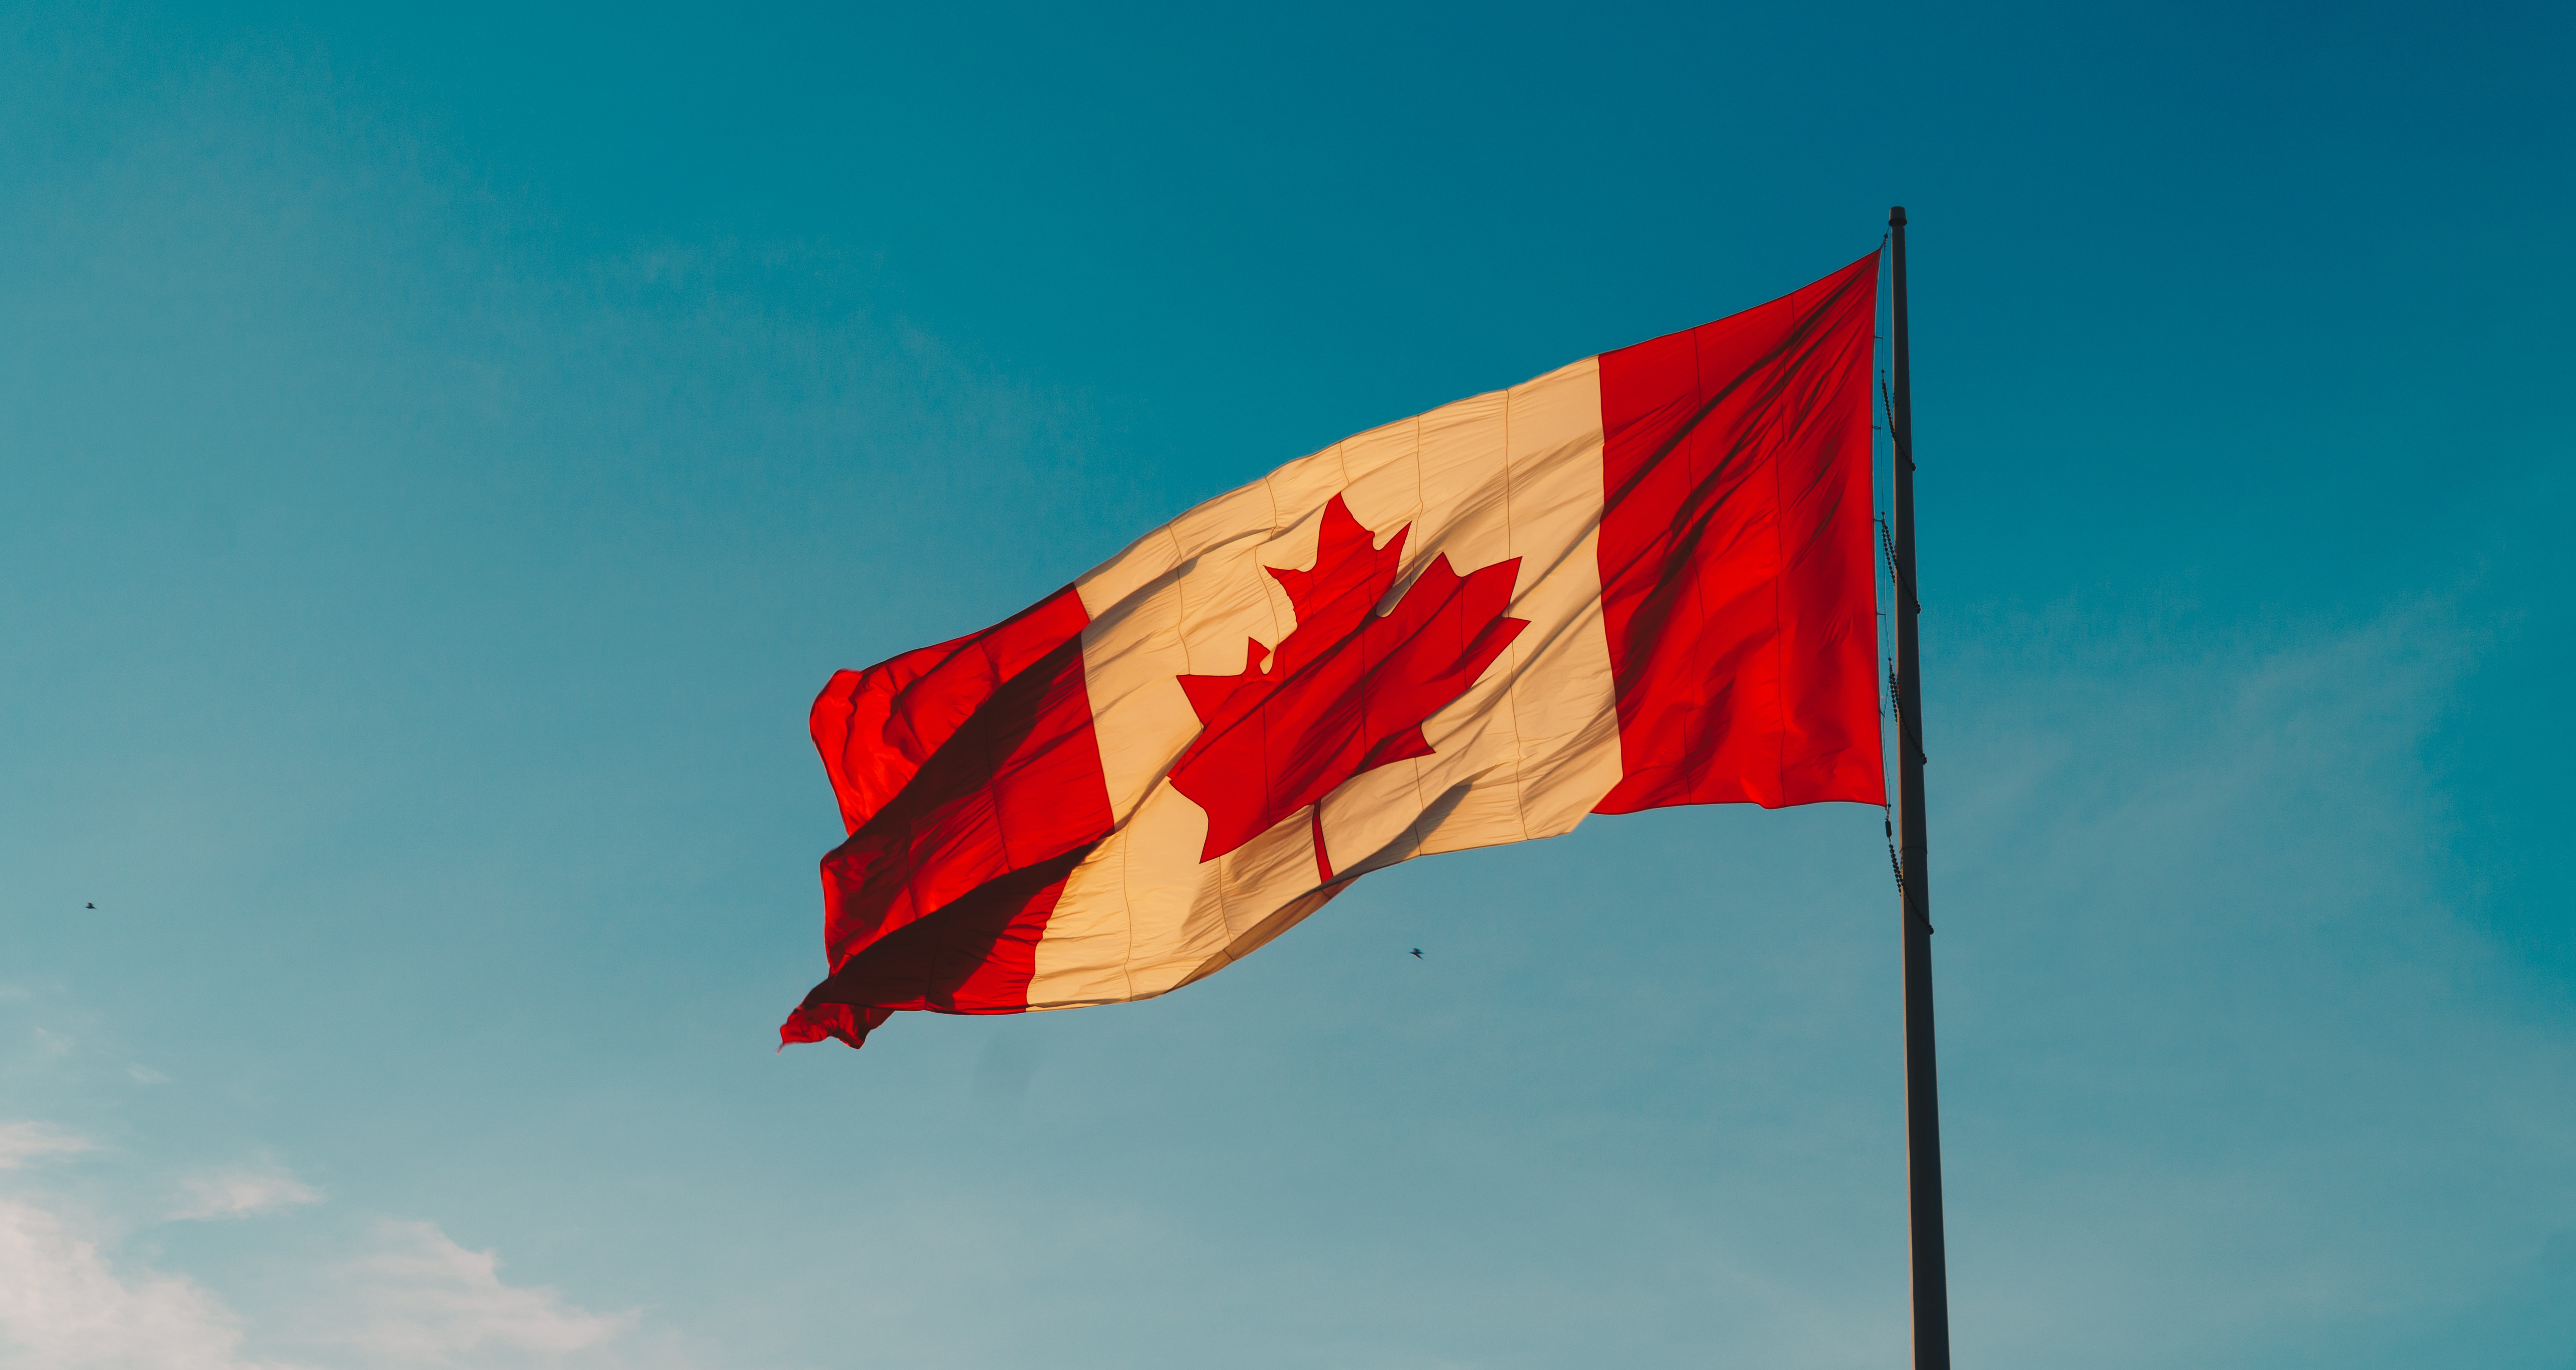 Canada Sports Betting Bill Goes Forward